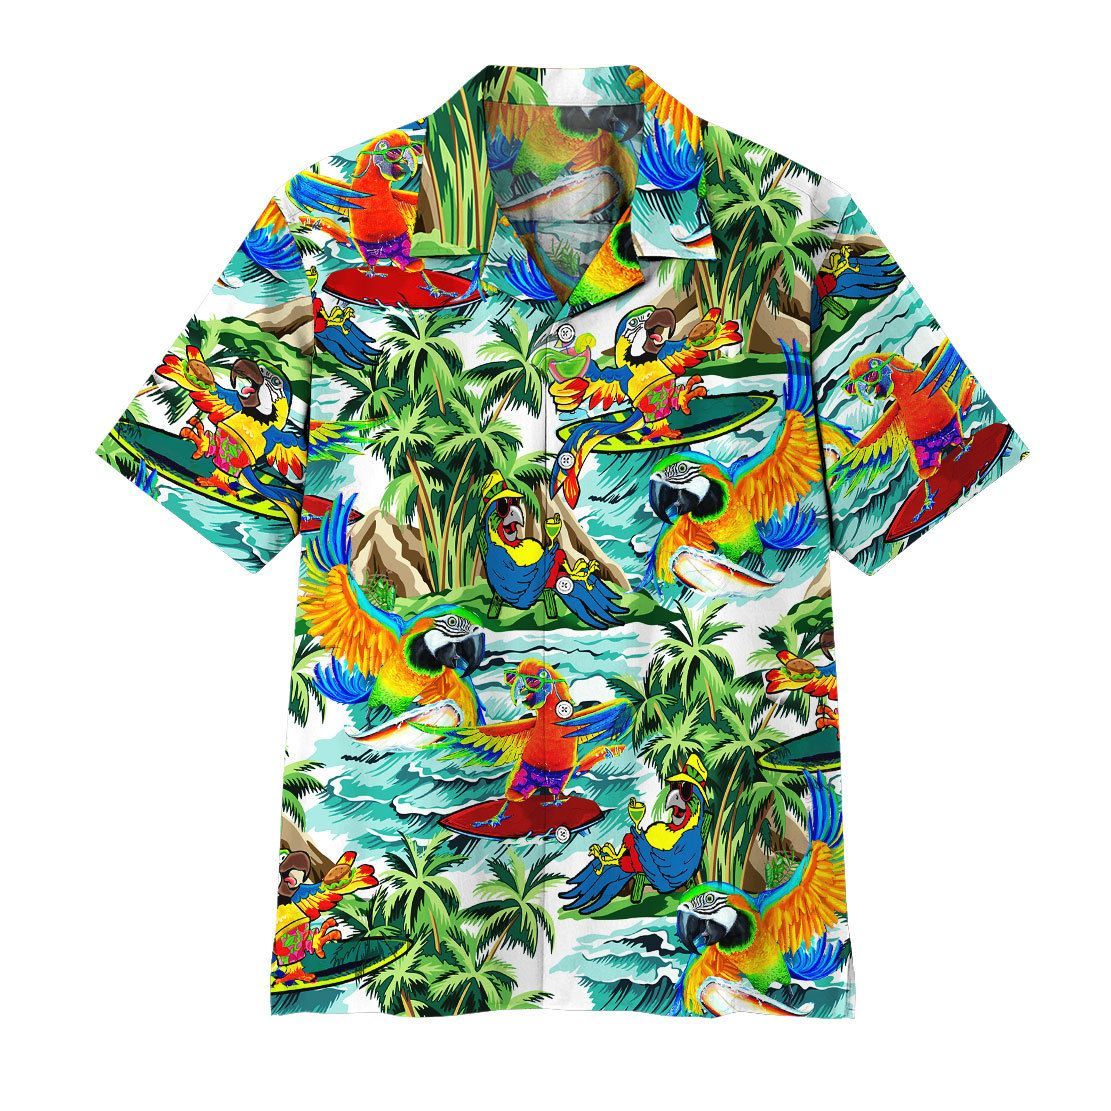 Gearhuman 3D Parrot Surfing Hawaii Shirt ZZ0707211 Short Sleeve Shirt Short Sleeve Shirt S 